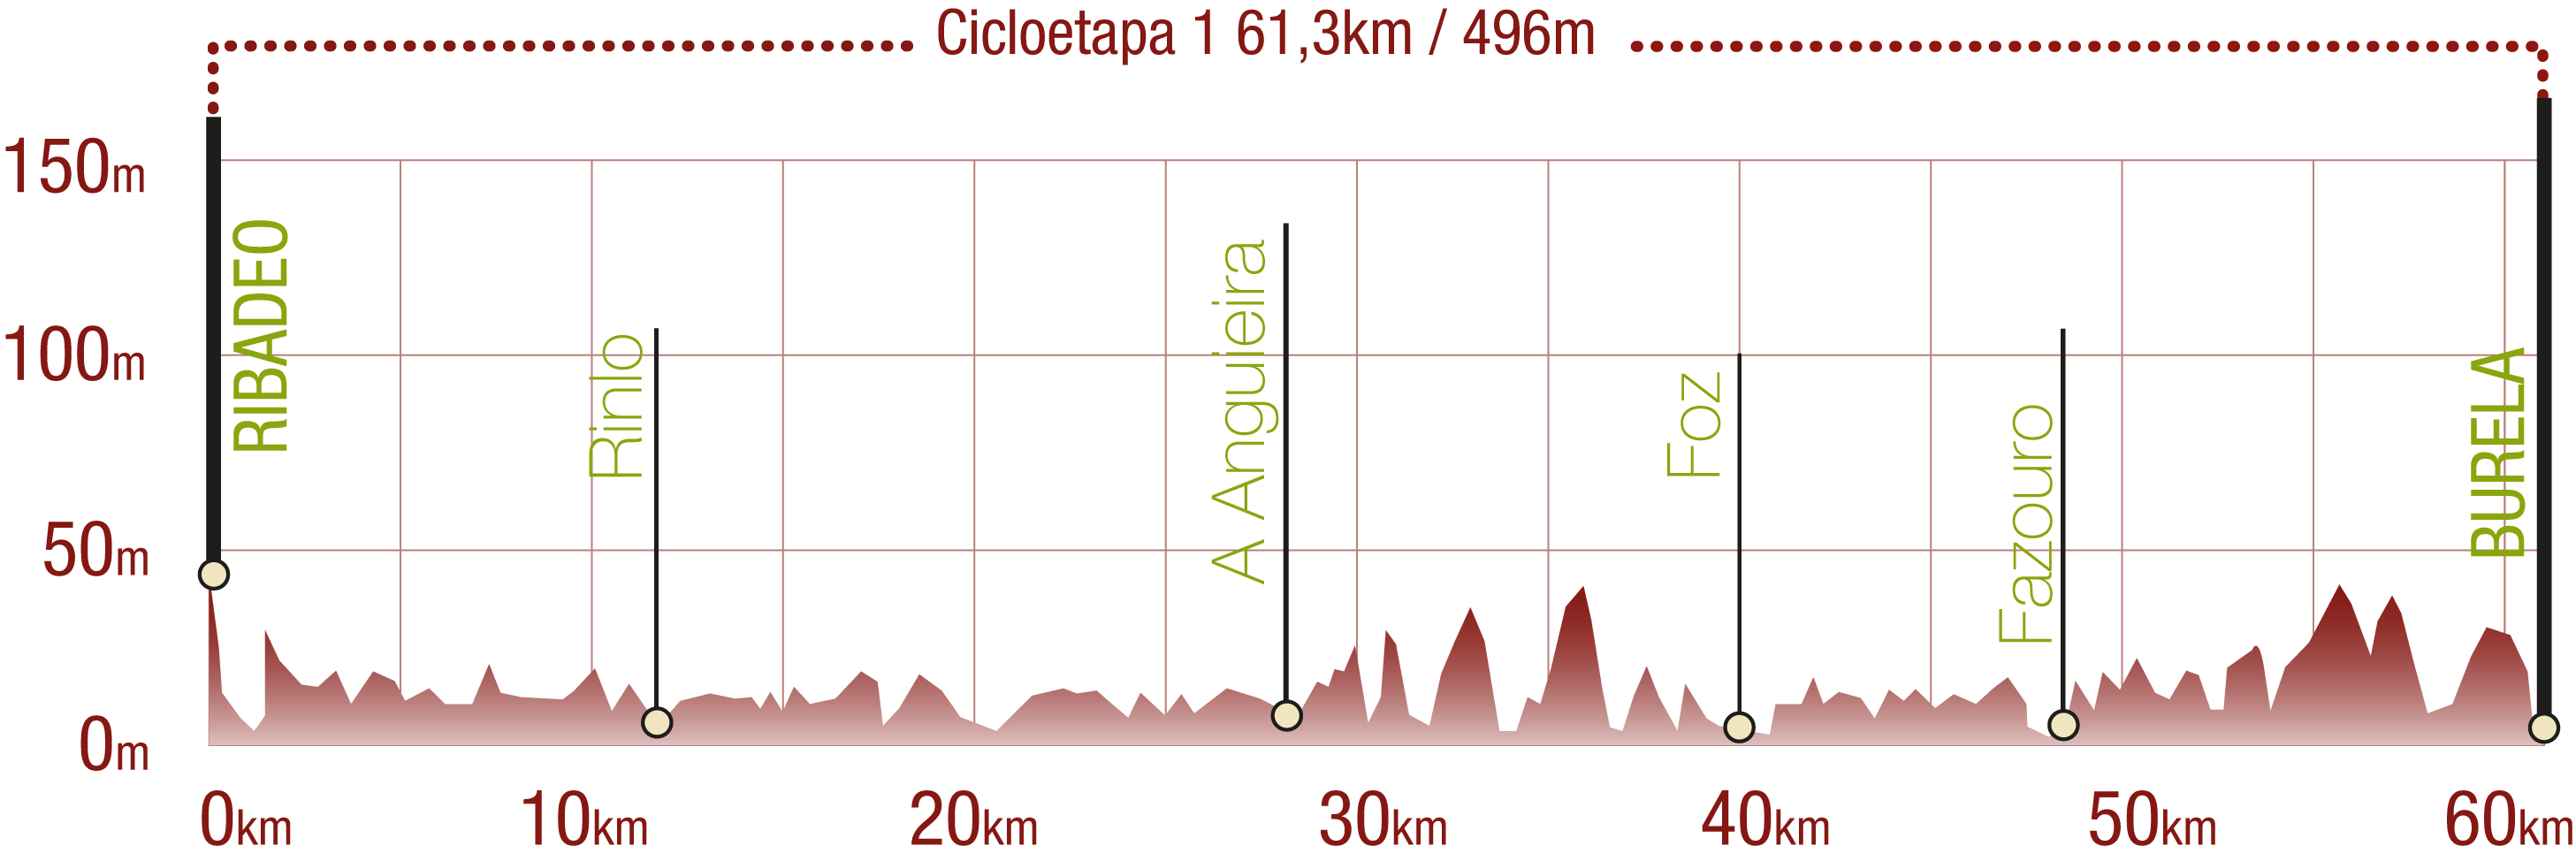 Perfil 
Perfil de la Cicloetapa 1 del CN Ruta del Cantábrico: 61,3 km / Desnivel de subida 496 m

